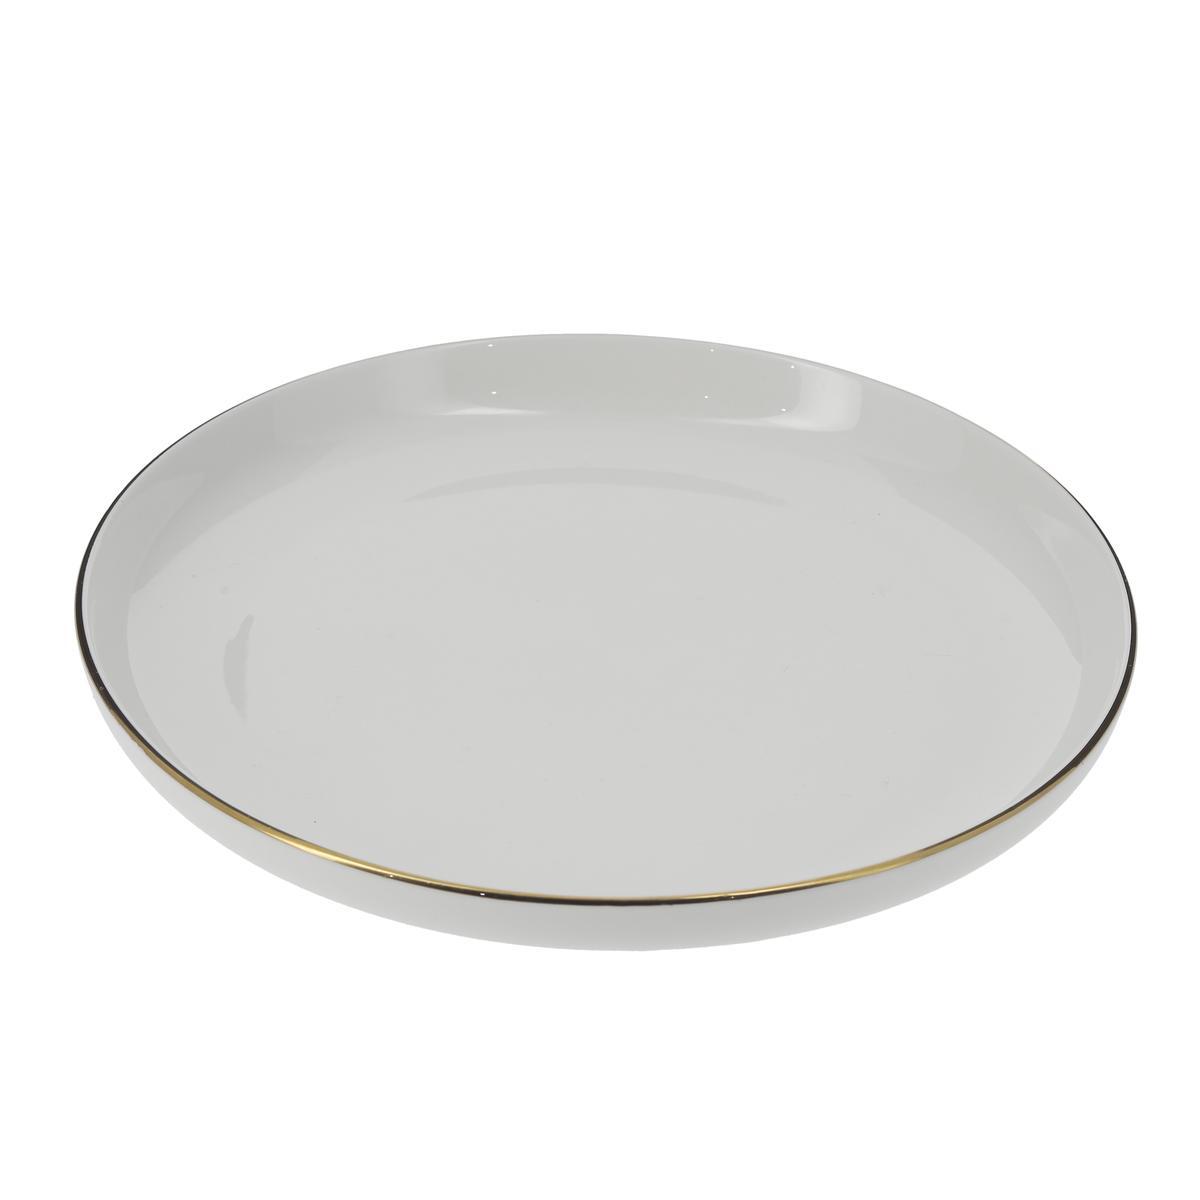 Assiette plate en porcelaine avec liseré doré - ø 27 cm